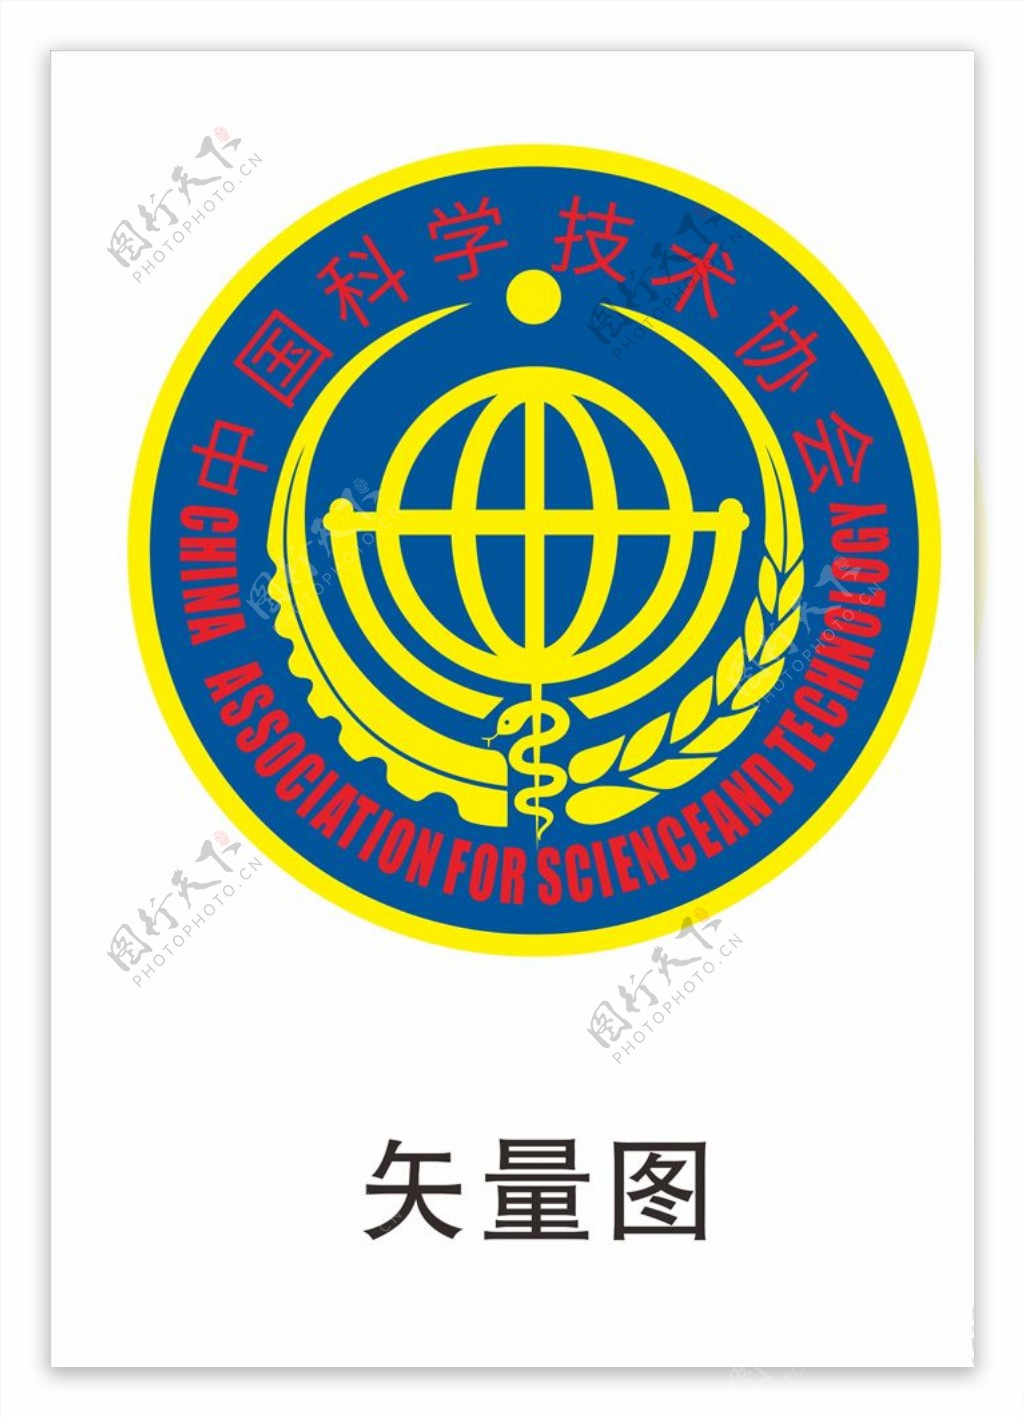 中国科协徽标